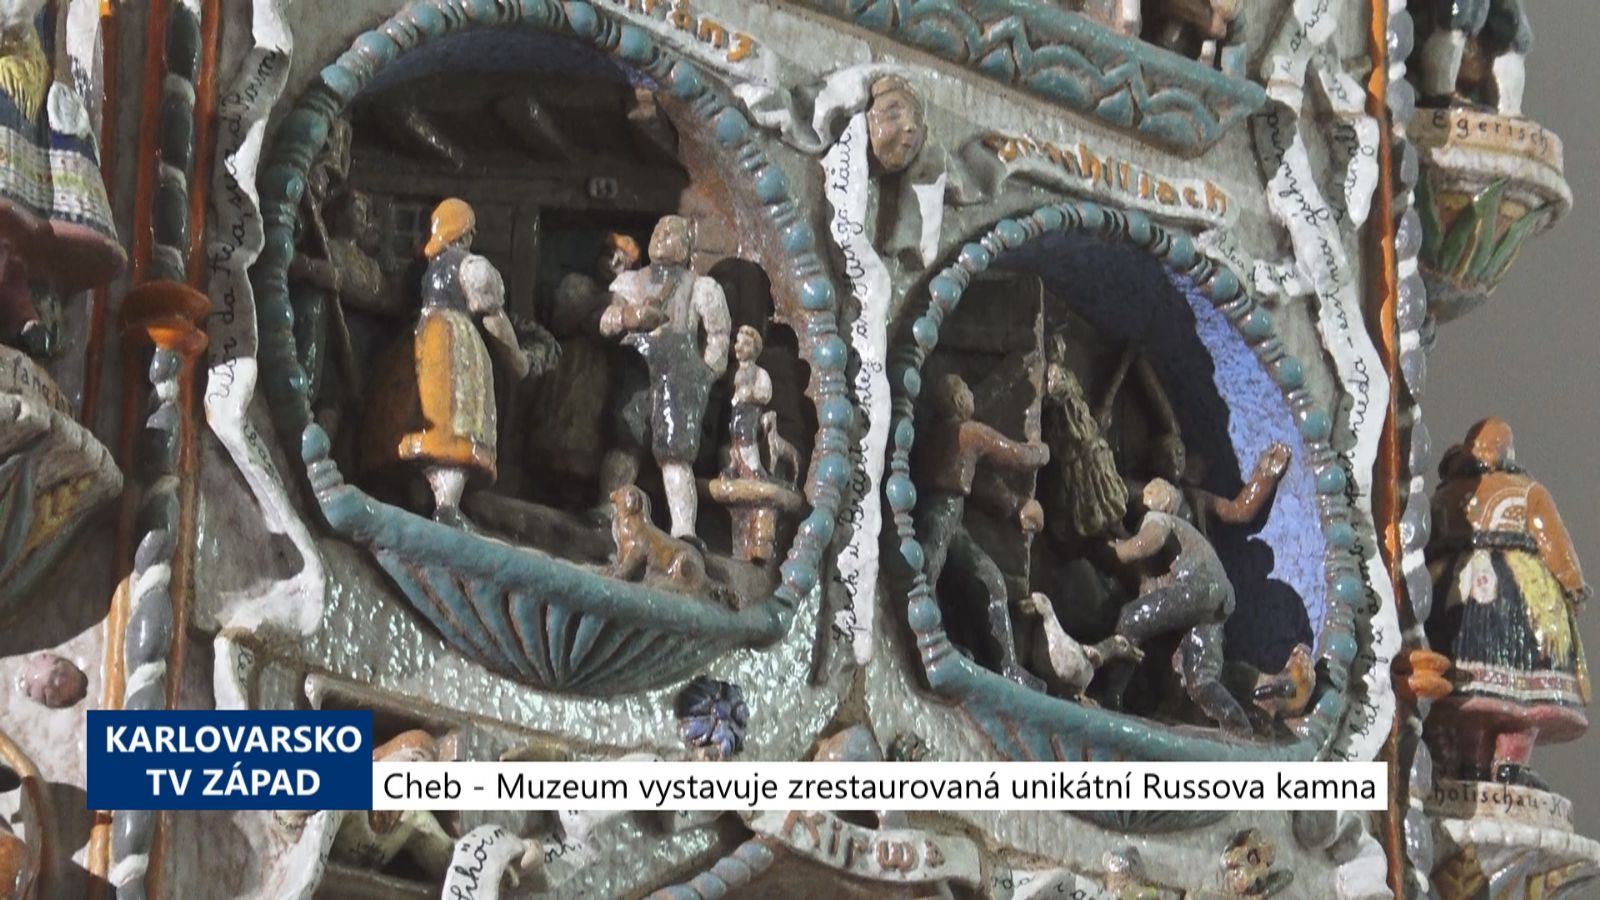 Cheb: Muzeum vystavuje zrestaurovaná unikátní Russova kamna (TV Západ)